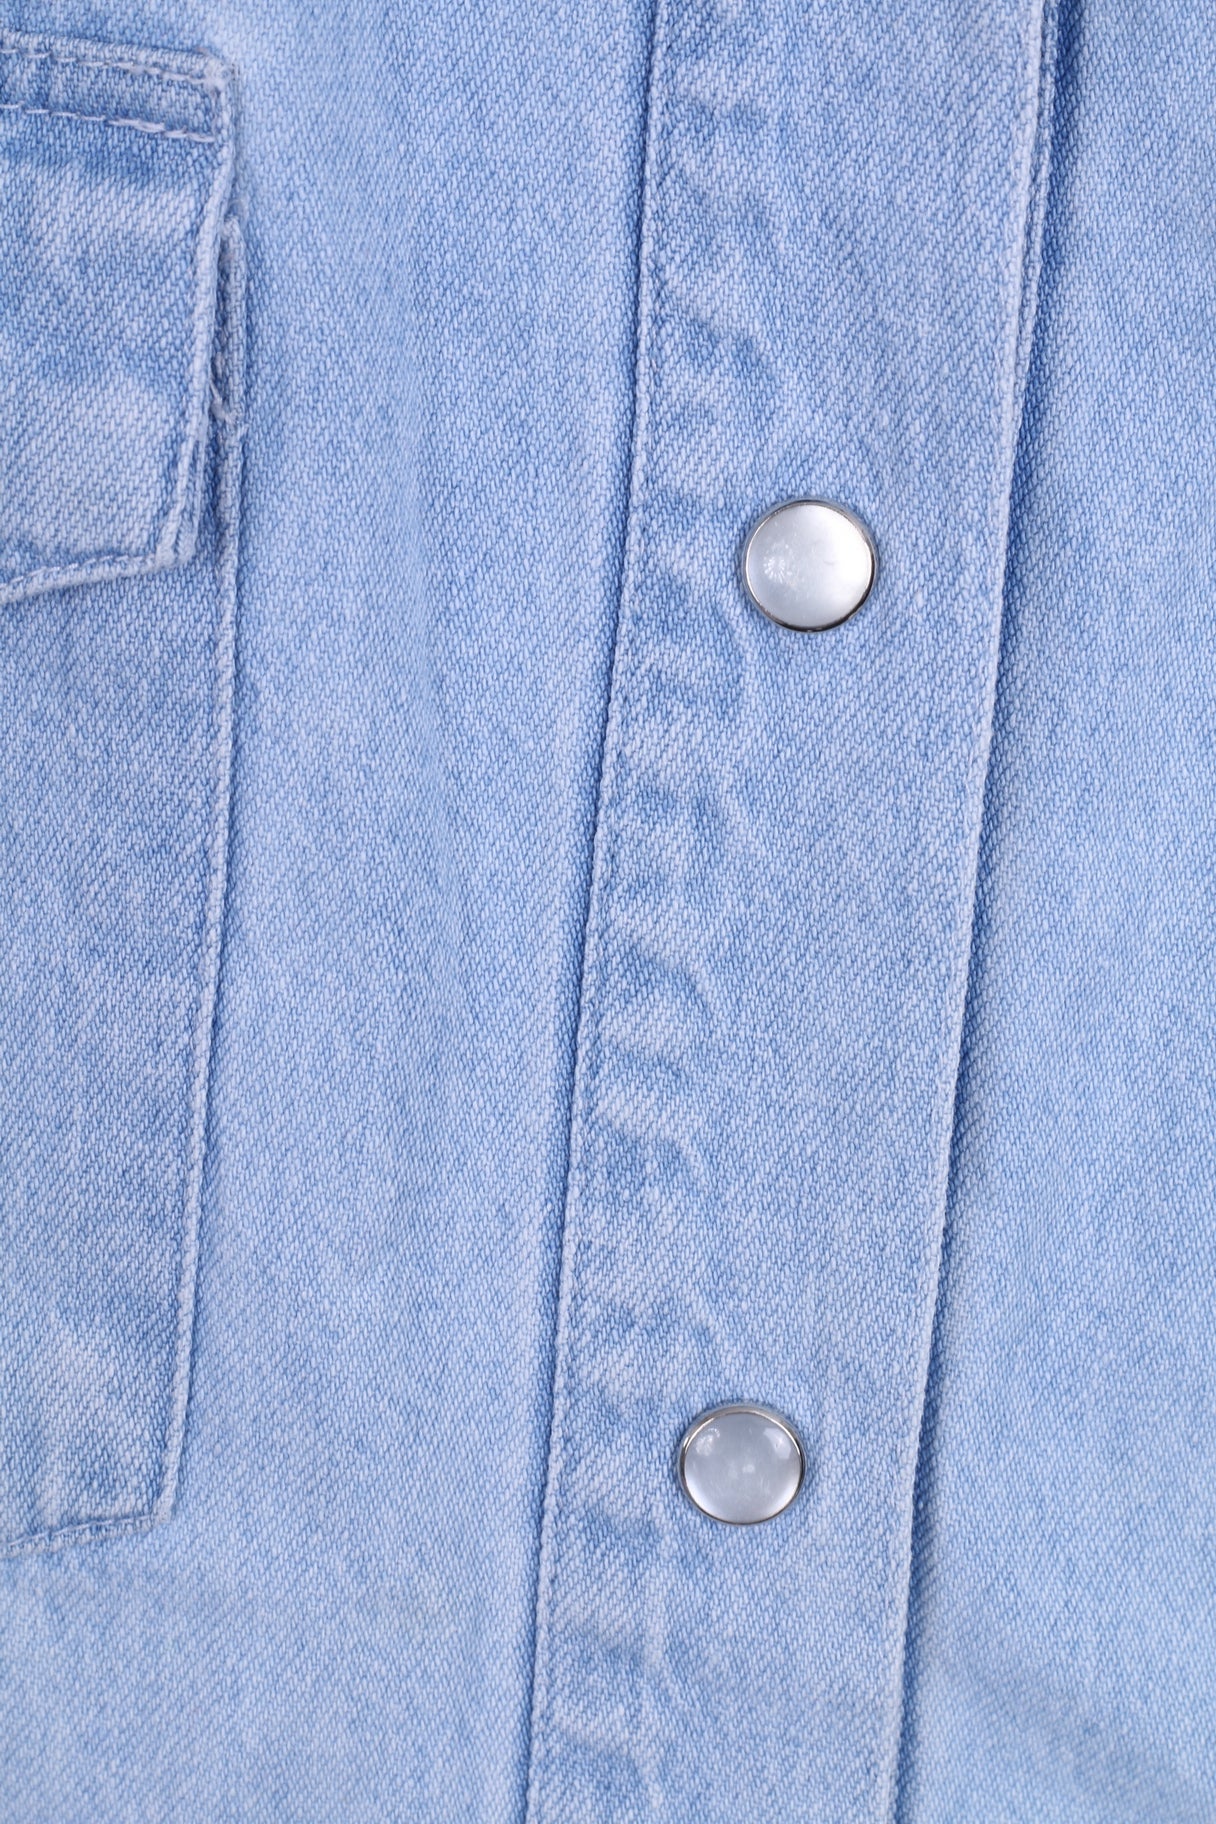 Marc Lauge Womens L Casual Shirt Blue Jeans Flowers Denim Cotton Italy